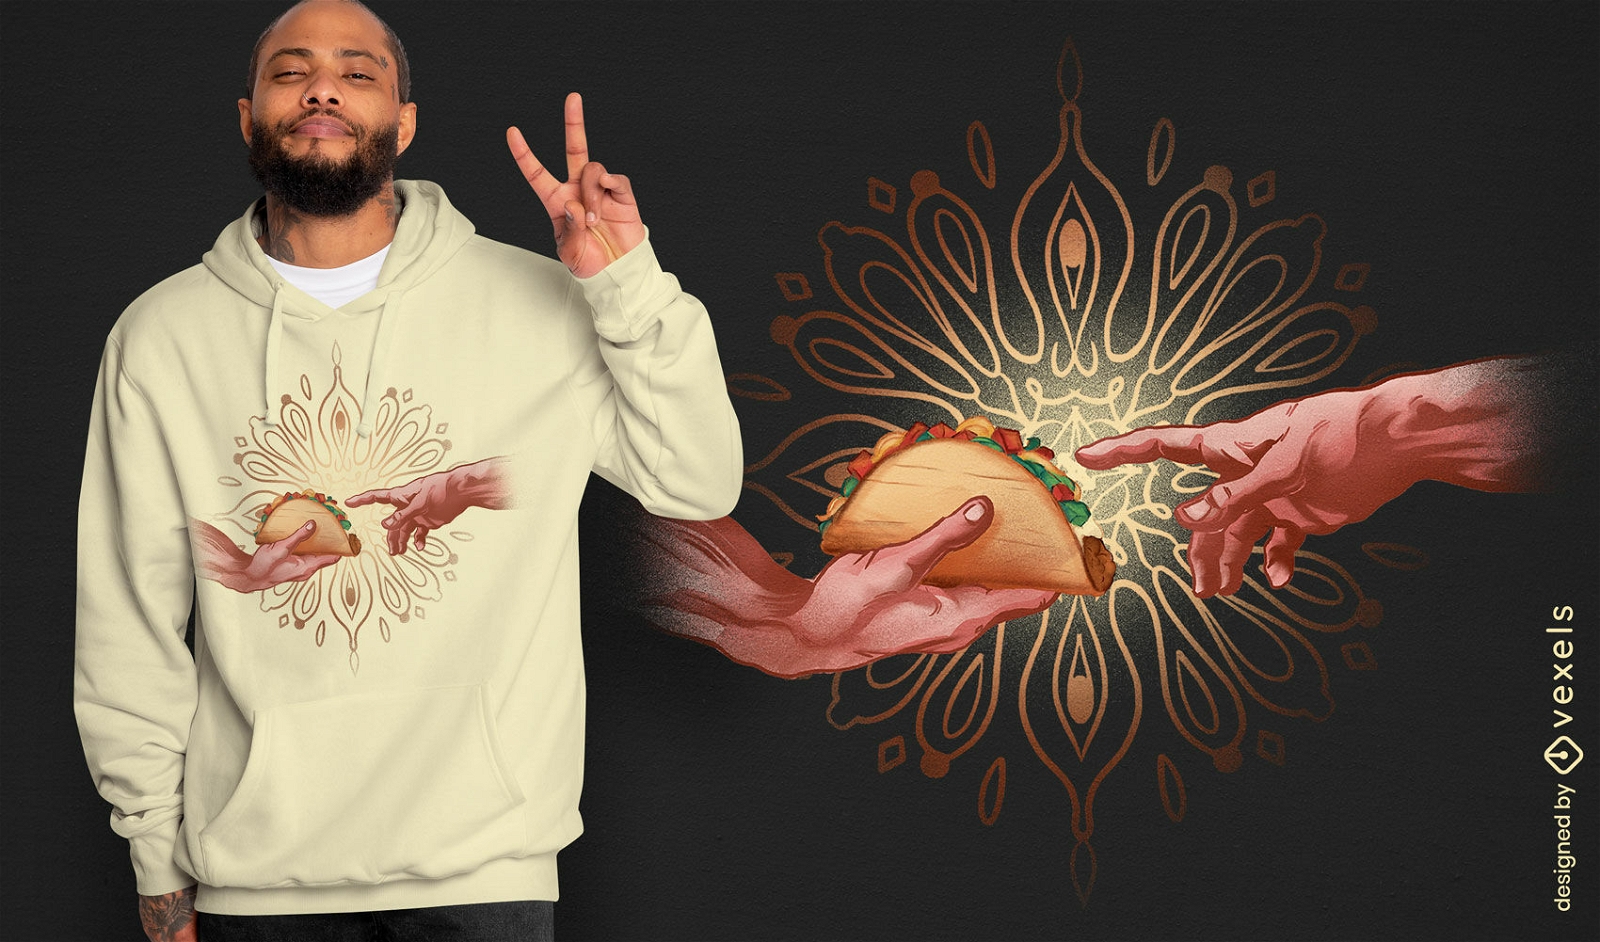 Religious taco t-shirt design